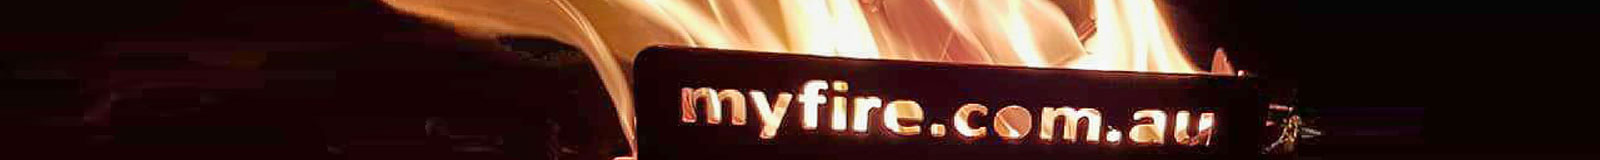 myfire.com.au banner